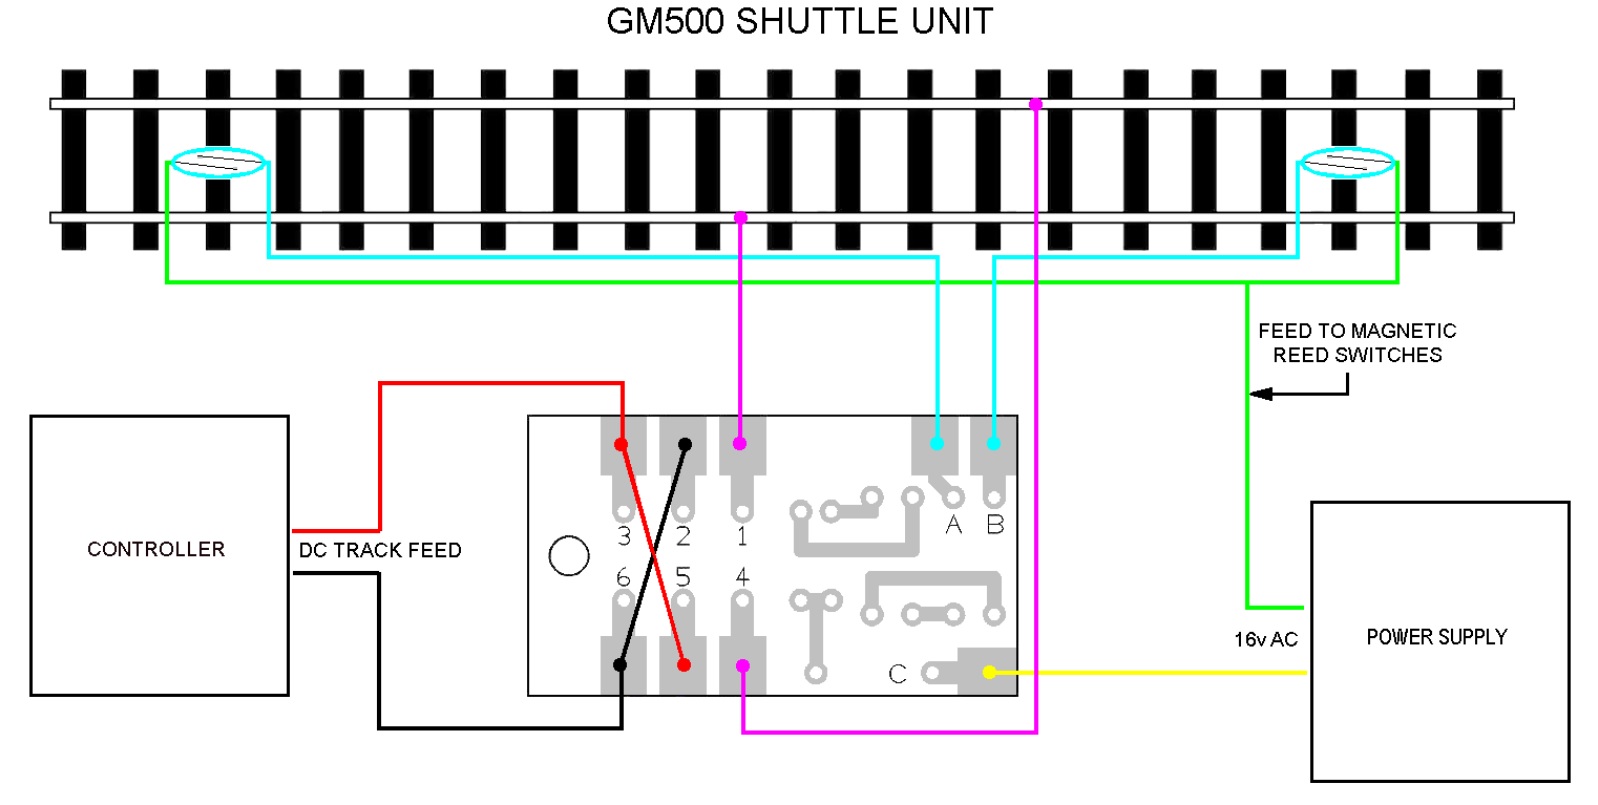 GM500 Shuttle Unit.